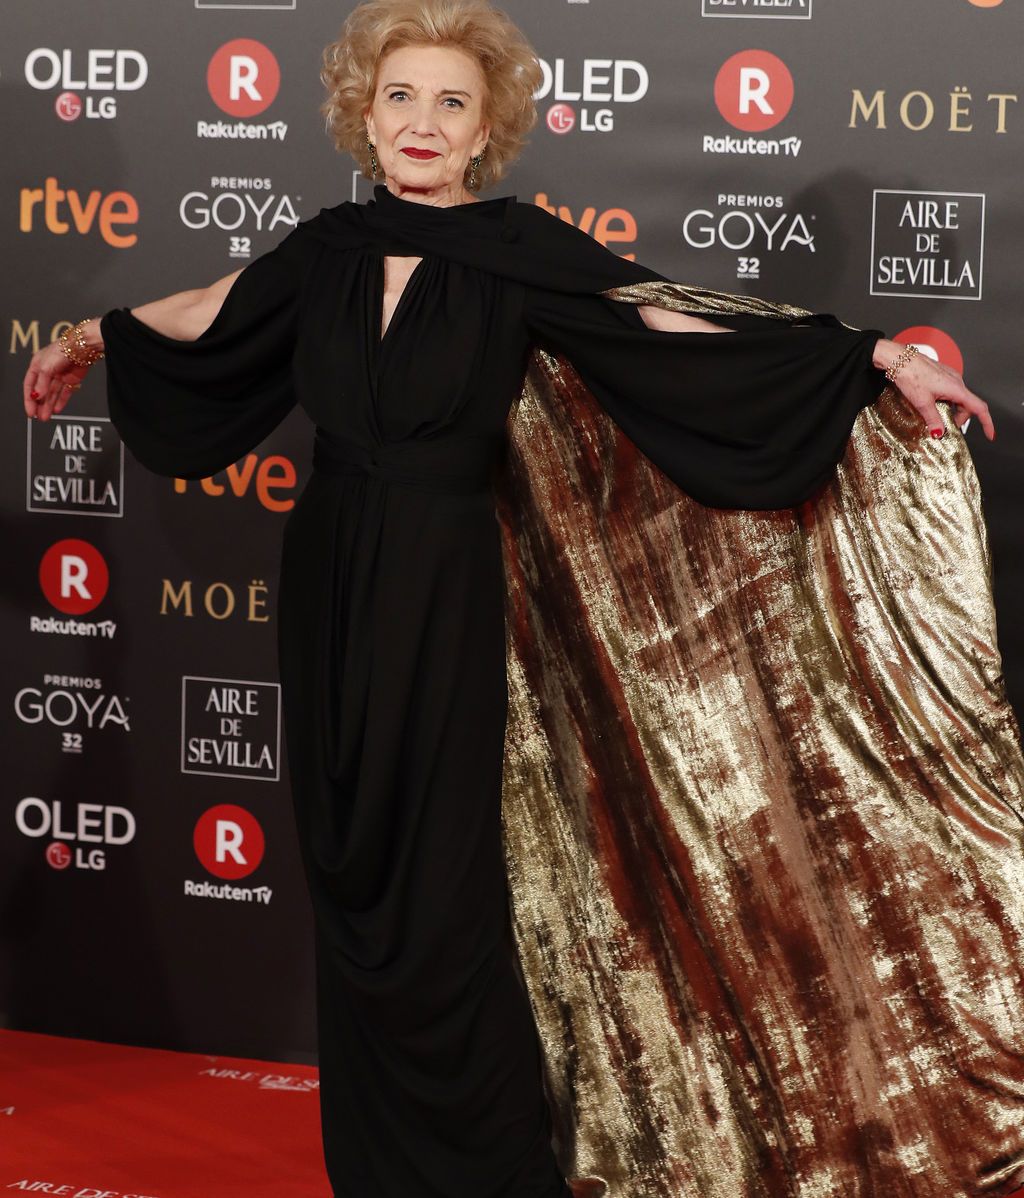 Parejas, influencers y mucho cine: la alfombra roja de los Goya, en fotos